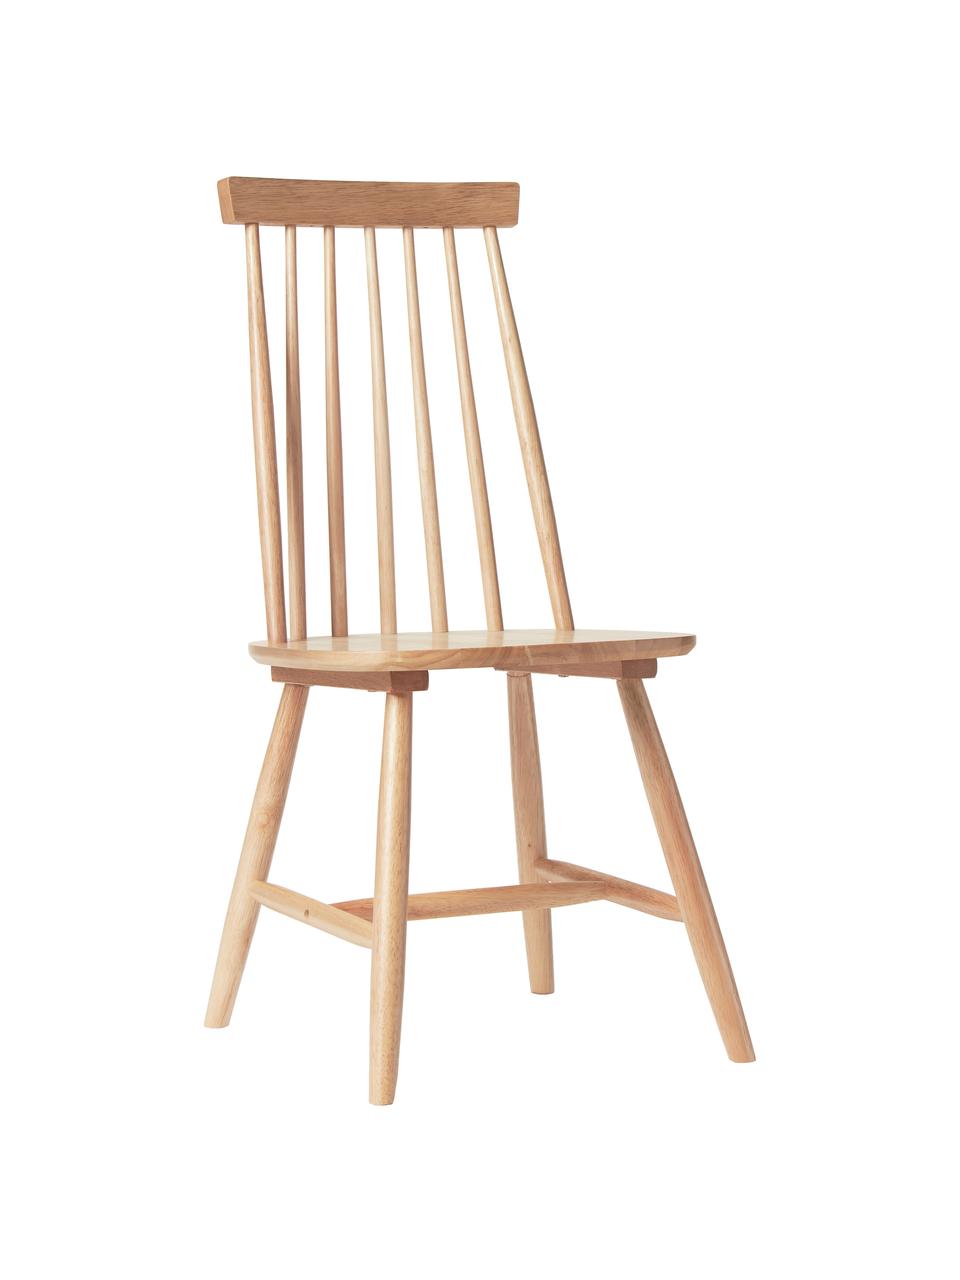 Windsor-Holzstühle Milas in Braun, 2 Stück, Kautschuckholz, lackiert, Braun, B 52 x T 45 cm